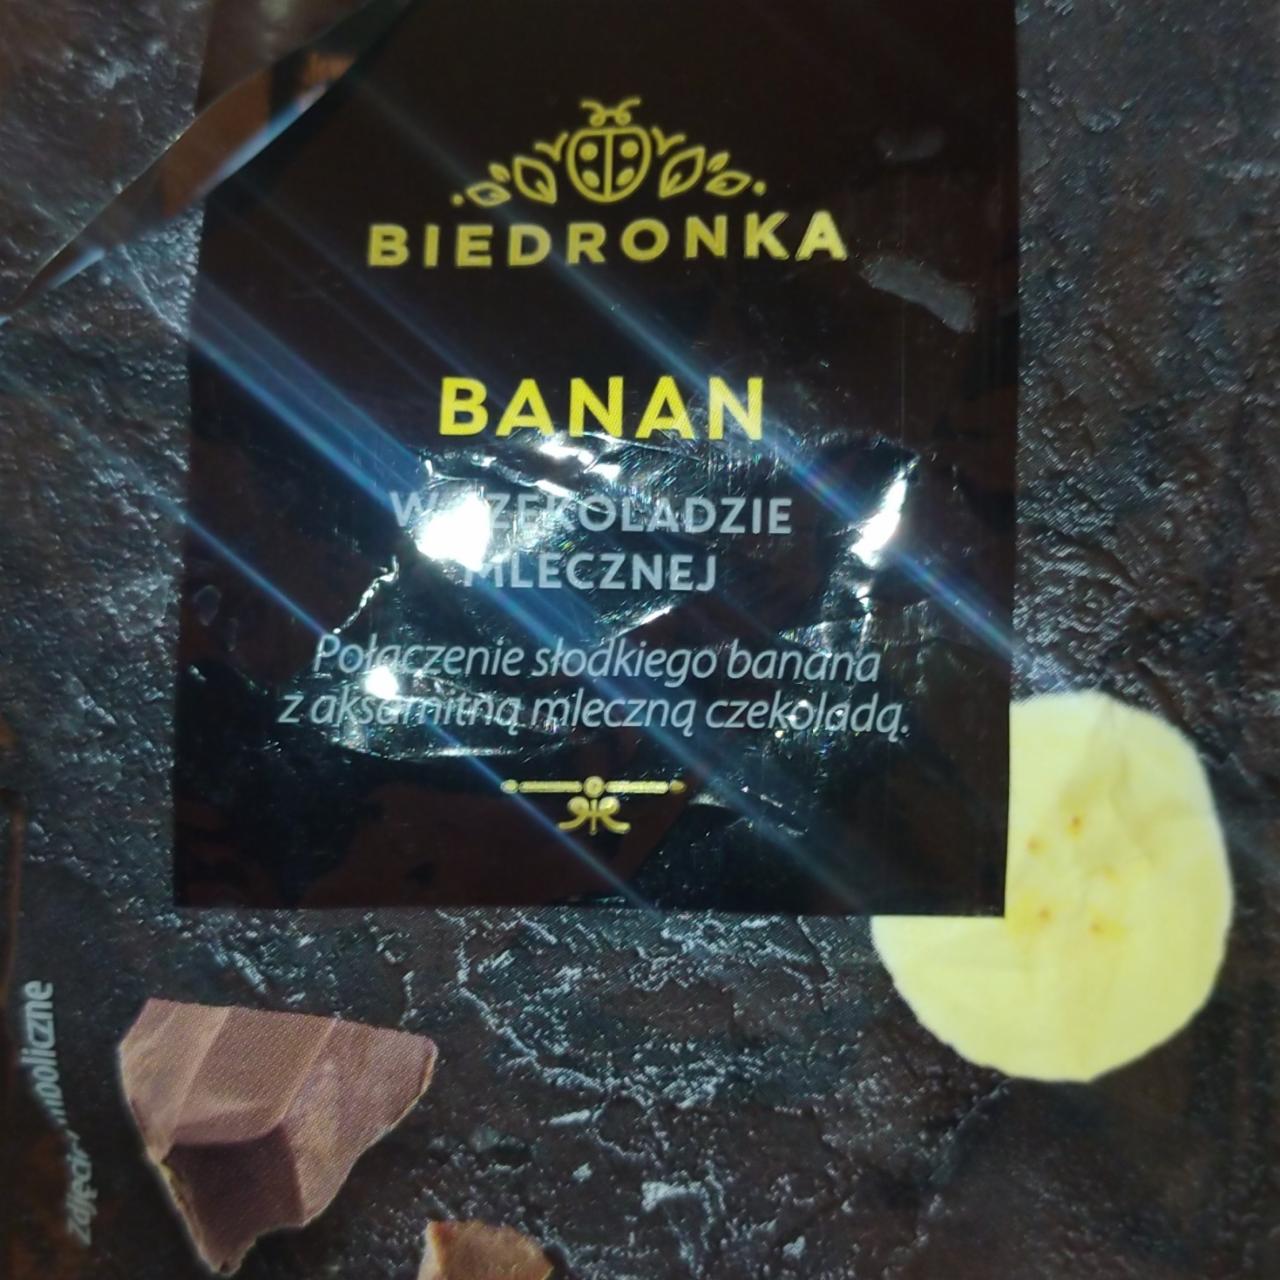 Фото - Banan w czekoladzie mlecznei Biedronka